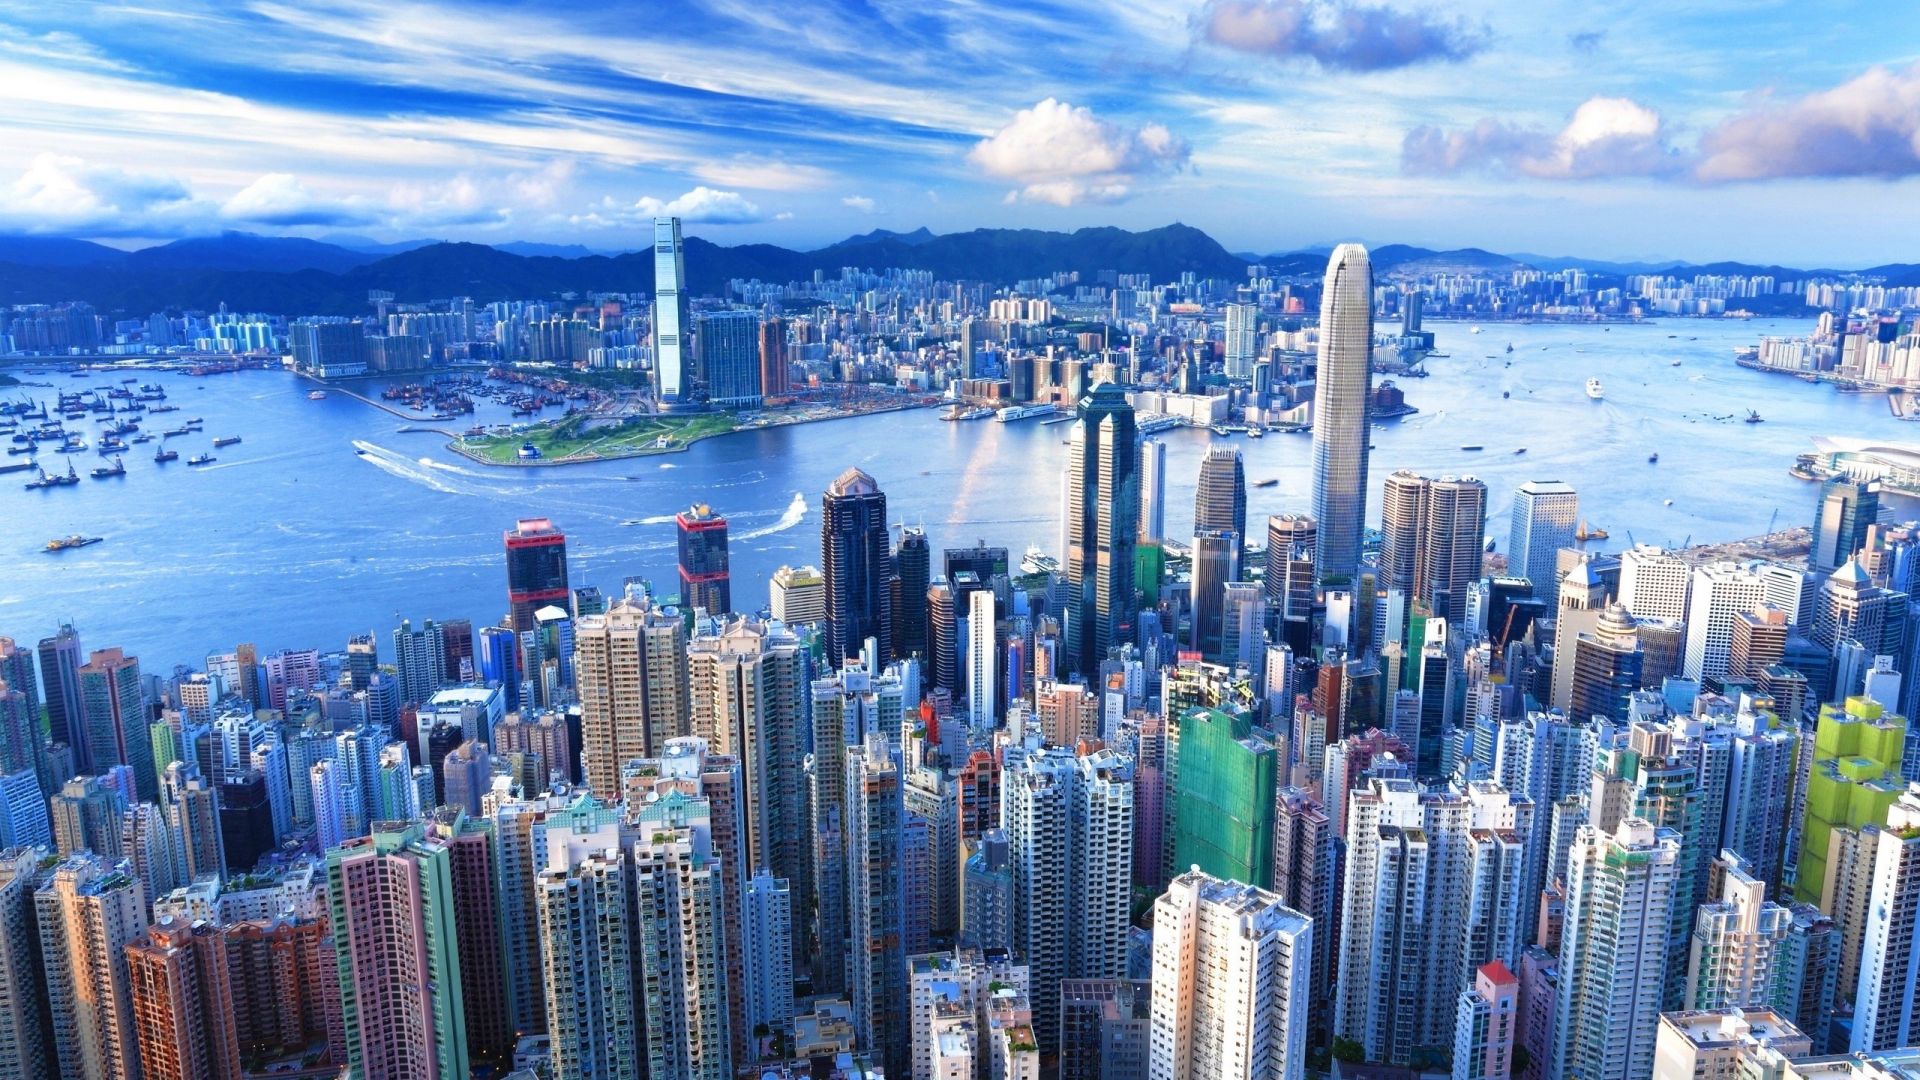 Wallpaper Desktop Hong Kong City, quang cảnh từ trên cao, hình ảnh HD, hình ảnh… tuyệt đẹp sẽ khiến bạn chìm đắm trong tuyệt vời của thành phố Hong Kong. Hãy cùng trang trí máy tính của bạn với những hình ảnh nền độc đáo và đầy cảm hứng về thành phố trong mơ này.